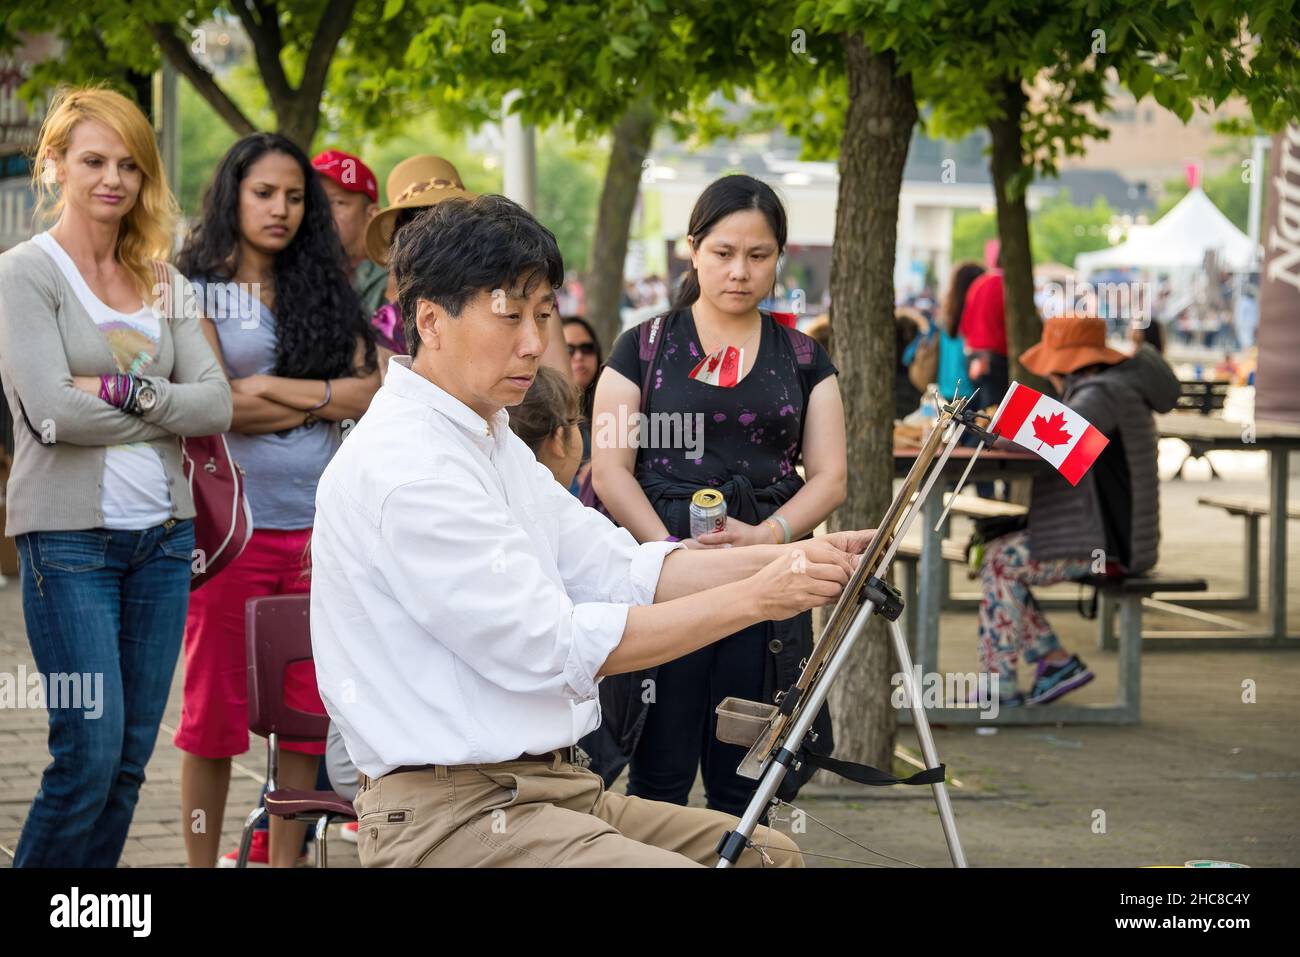 Toronto, Canada - le 1 juillet 2015 : les célébrations de la fête du Canada à Toronto Harbourfront.Un artiste asiatique de sexe masculin peint une photo de la rue.Les gens qui regardent moi Banque D'Images